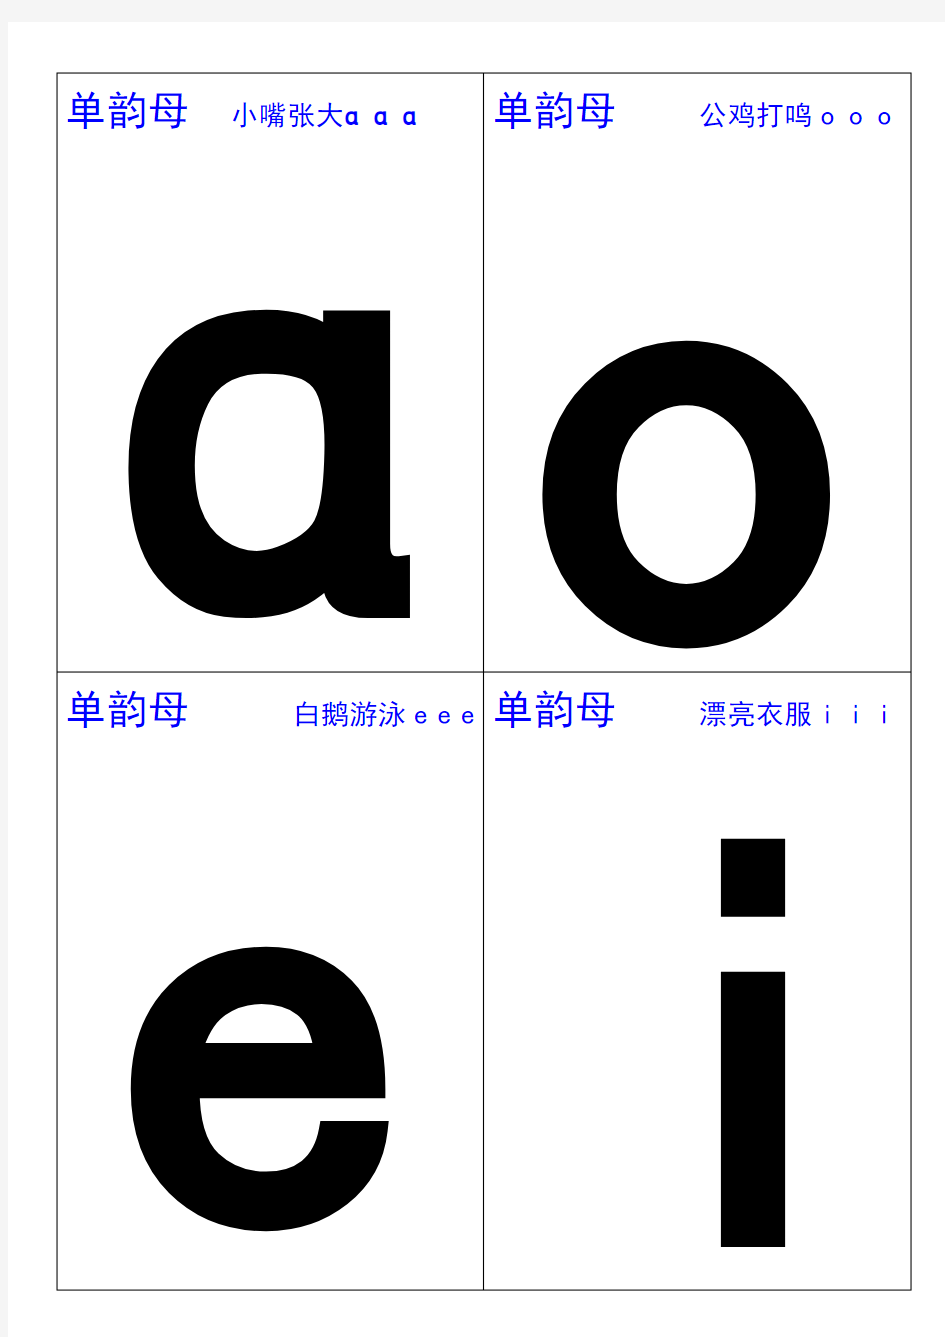 29汉语拼音字母表卡片